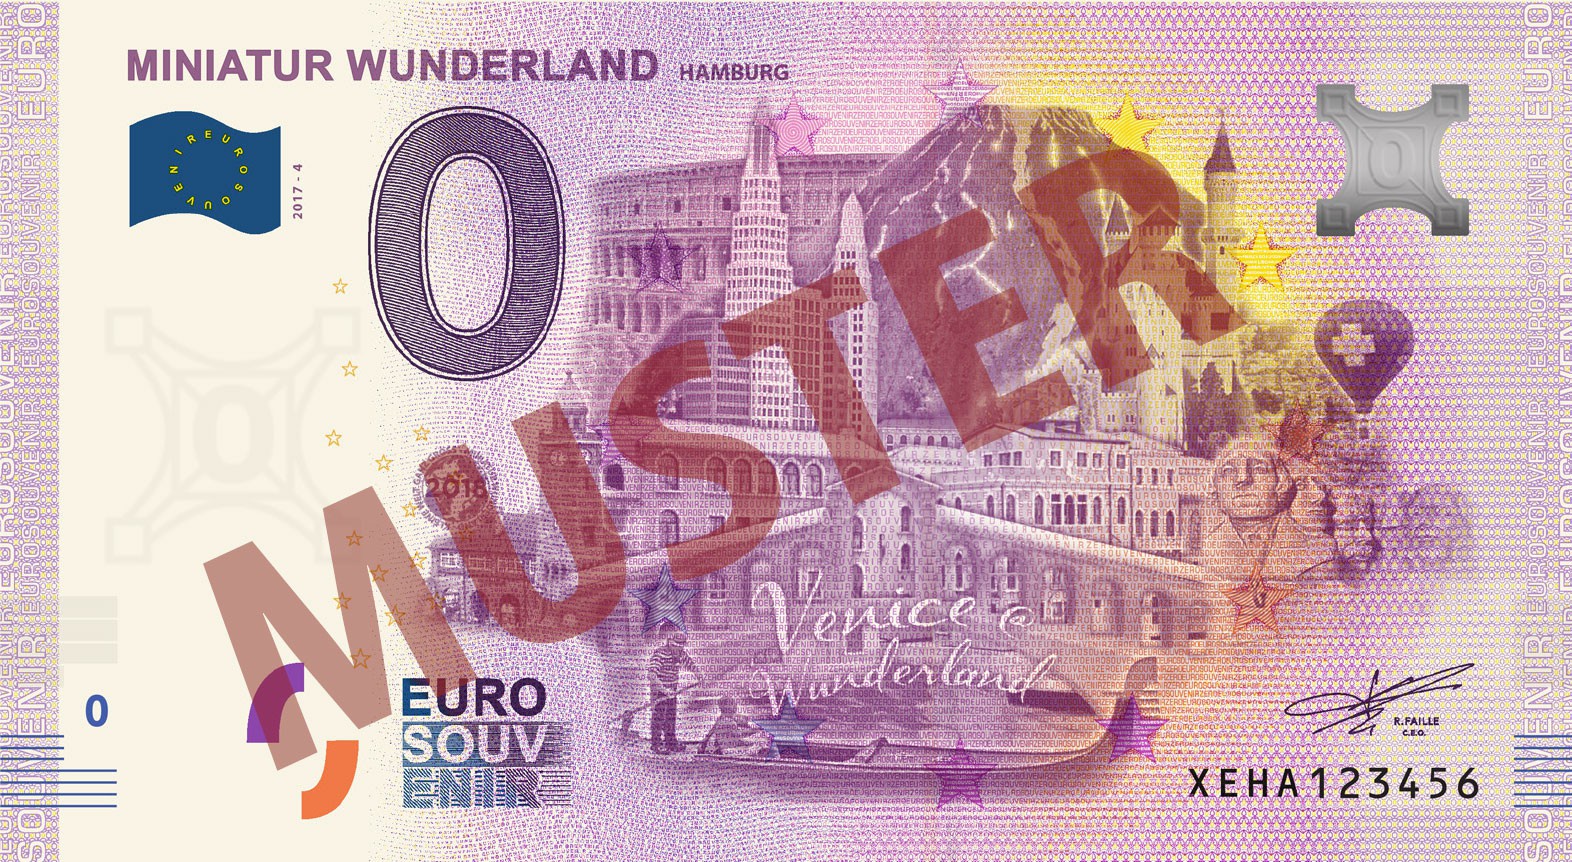 Euro-Souvenir-Banknote (2018-4)